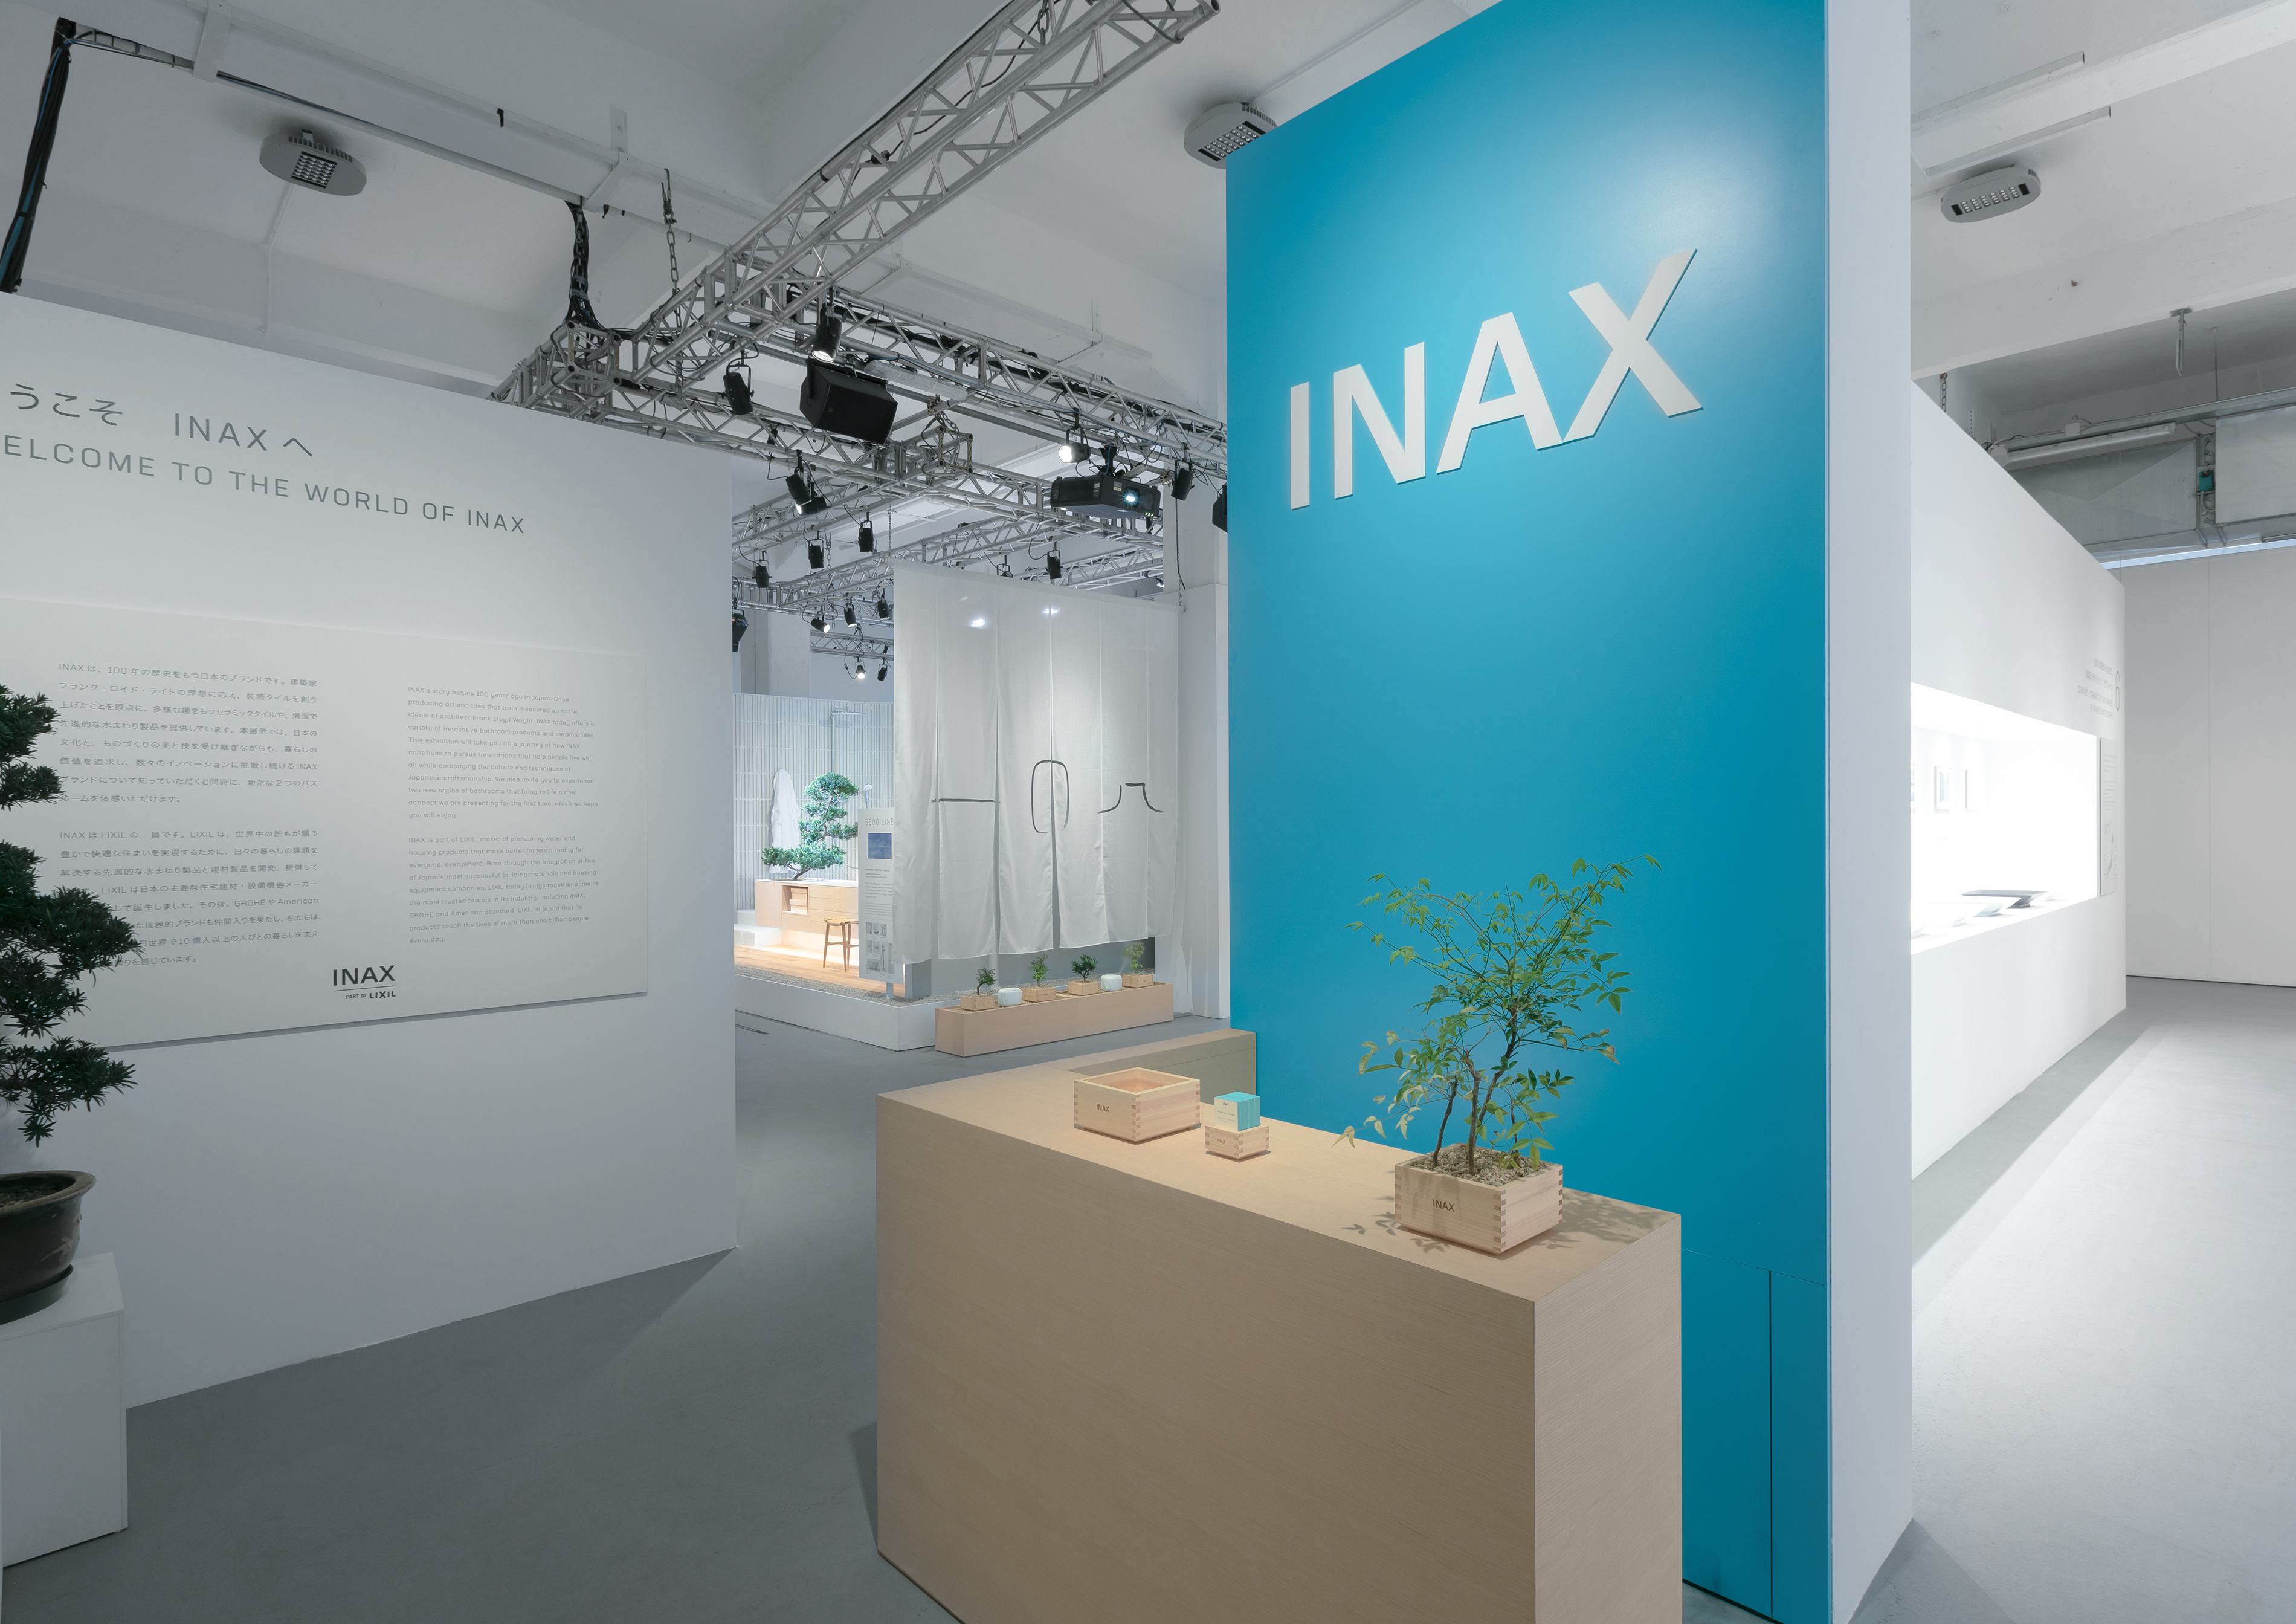 INAX Exhibition at Milan Design Week 2019